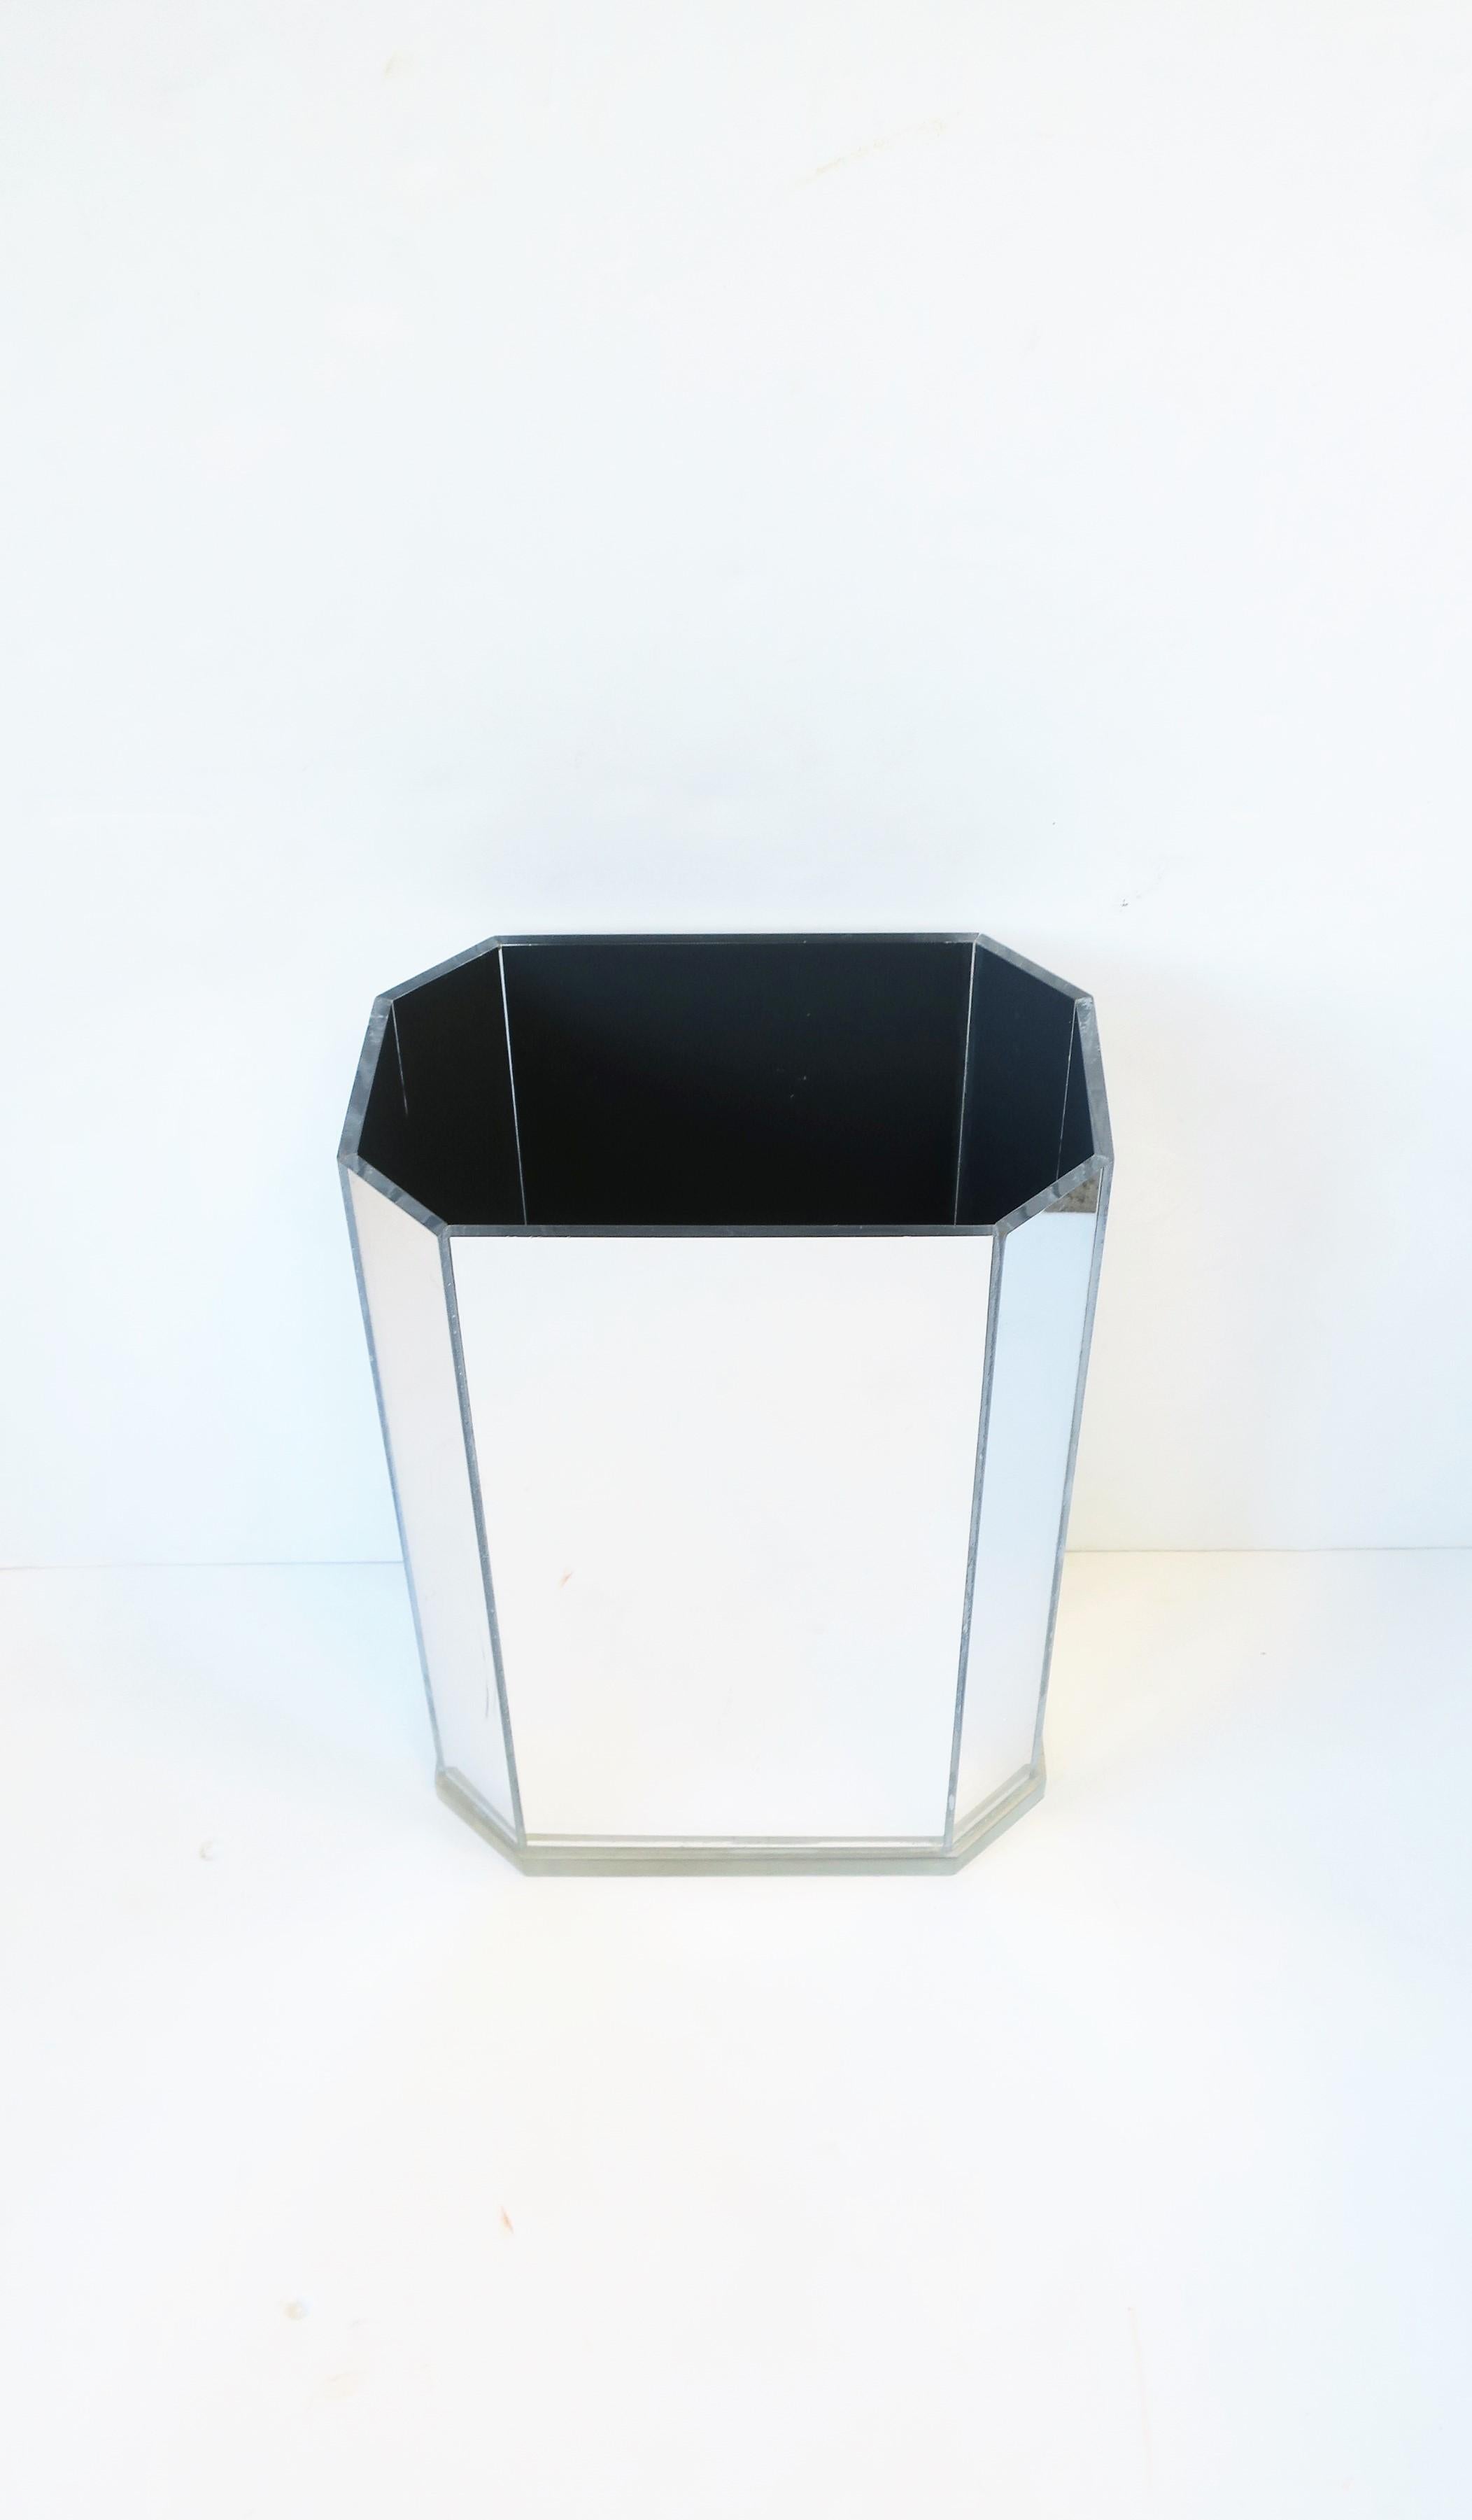 mirrored waste basket